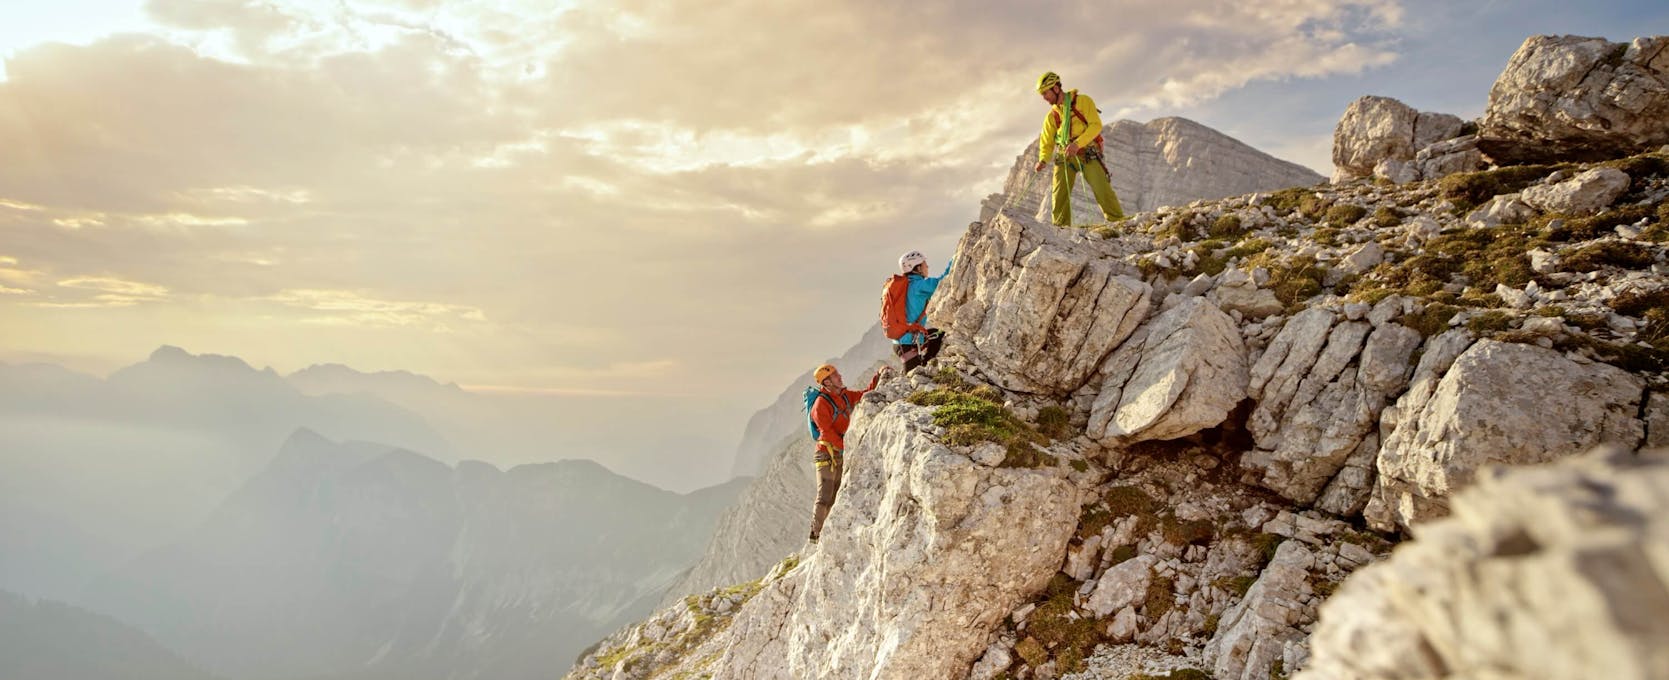 Climbers move forward avoiding risks to reach their goal, the summit